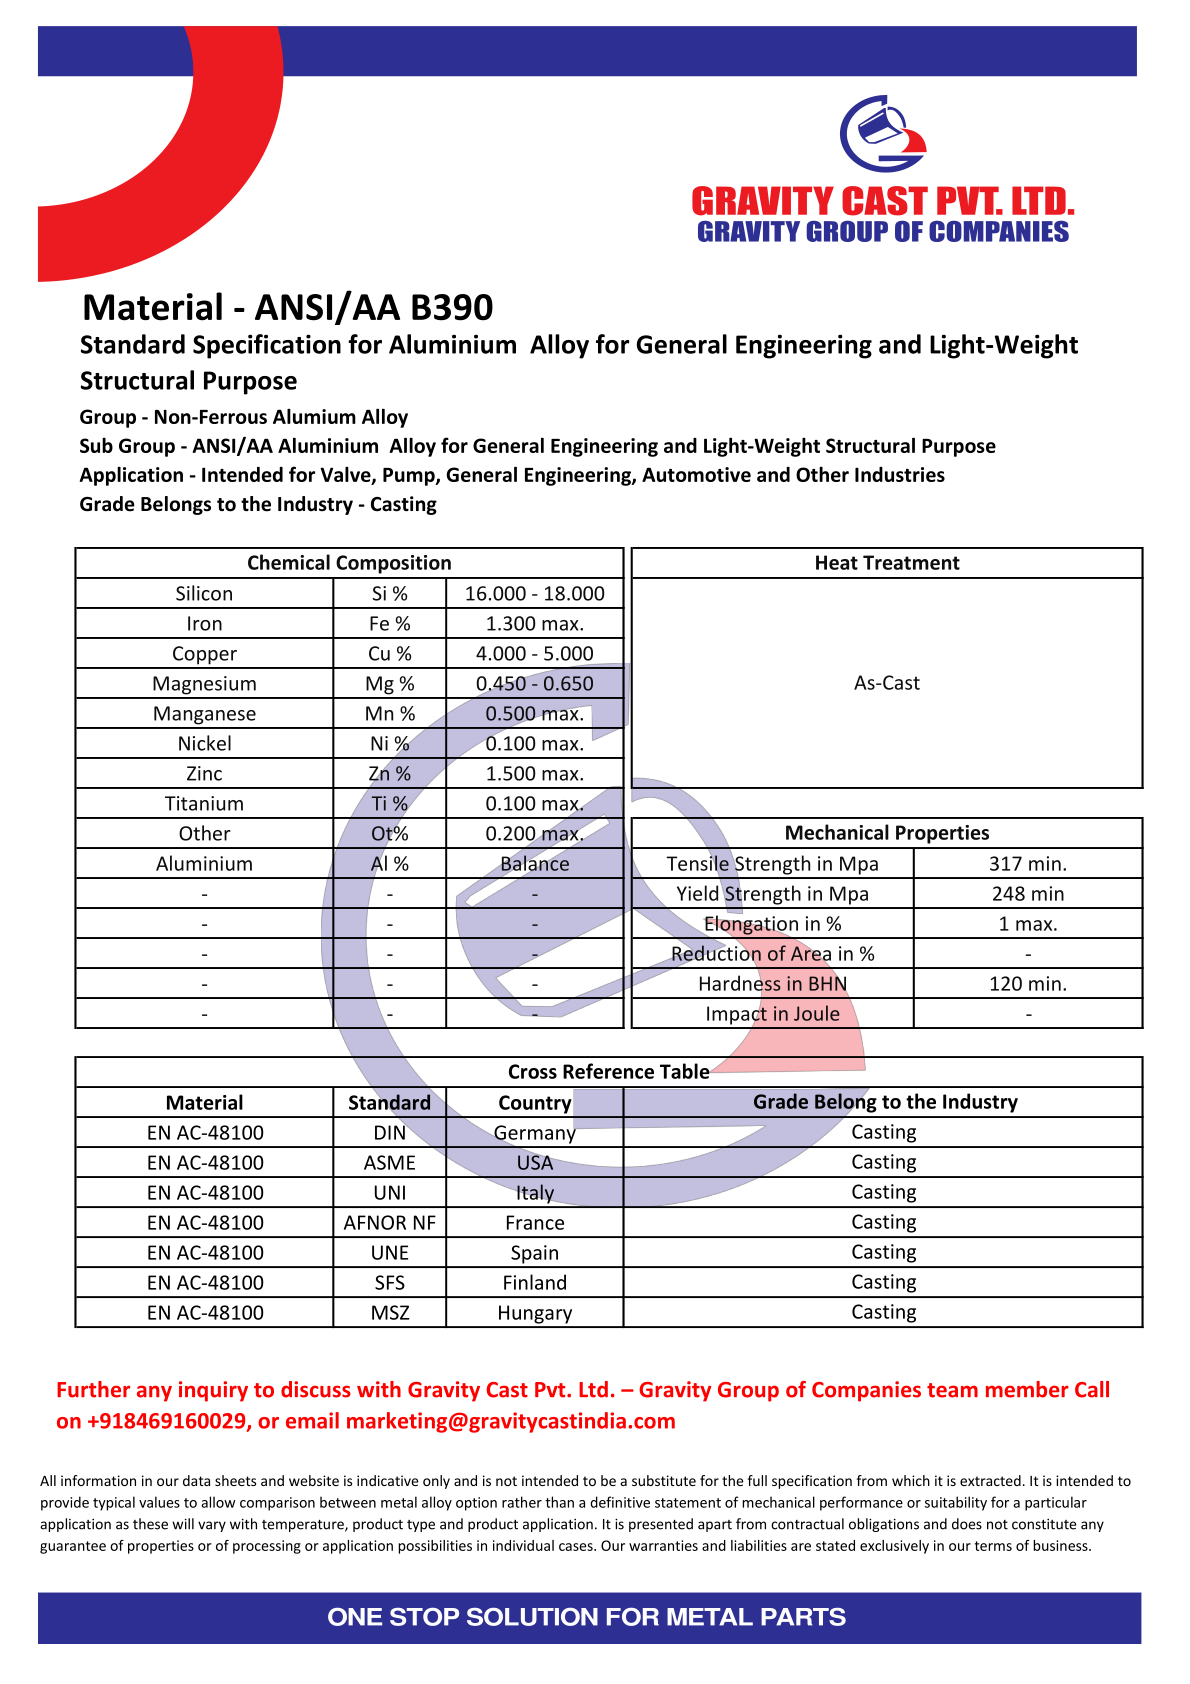 ANSI AA B390.pdf